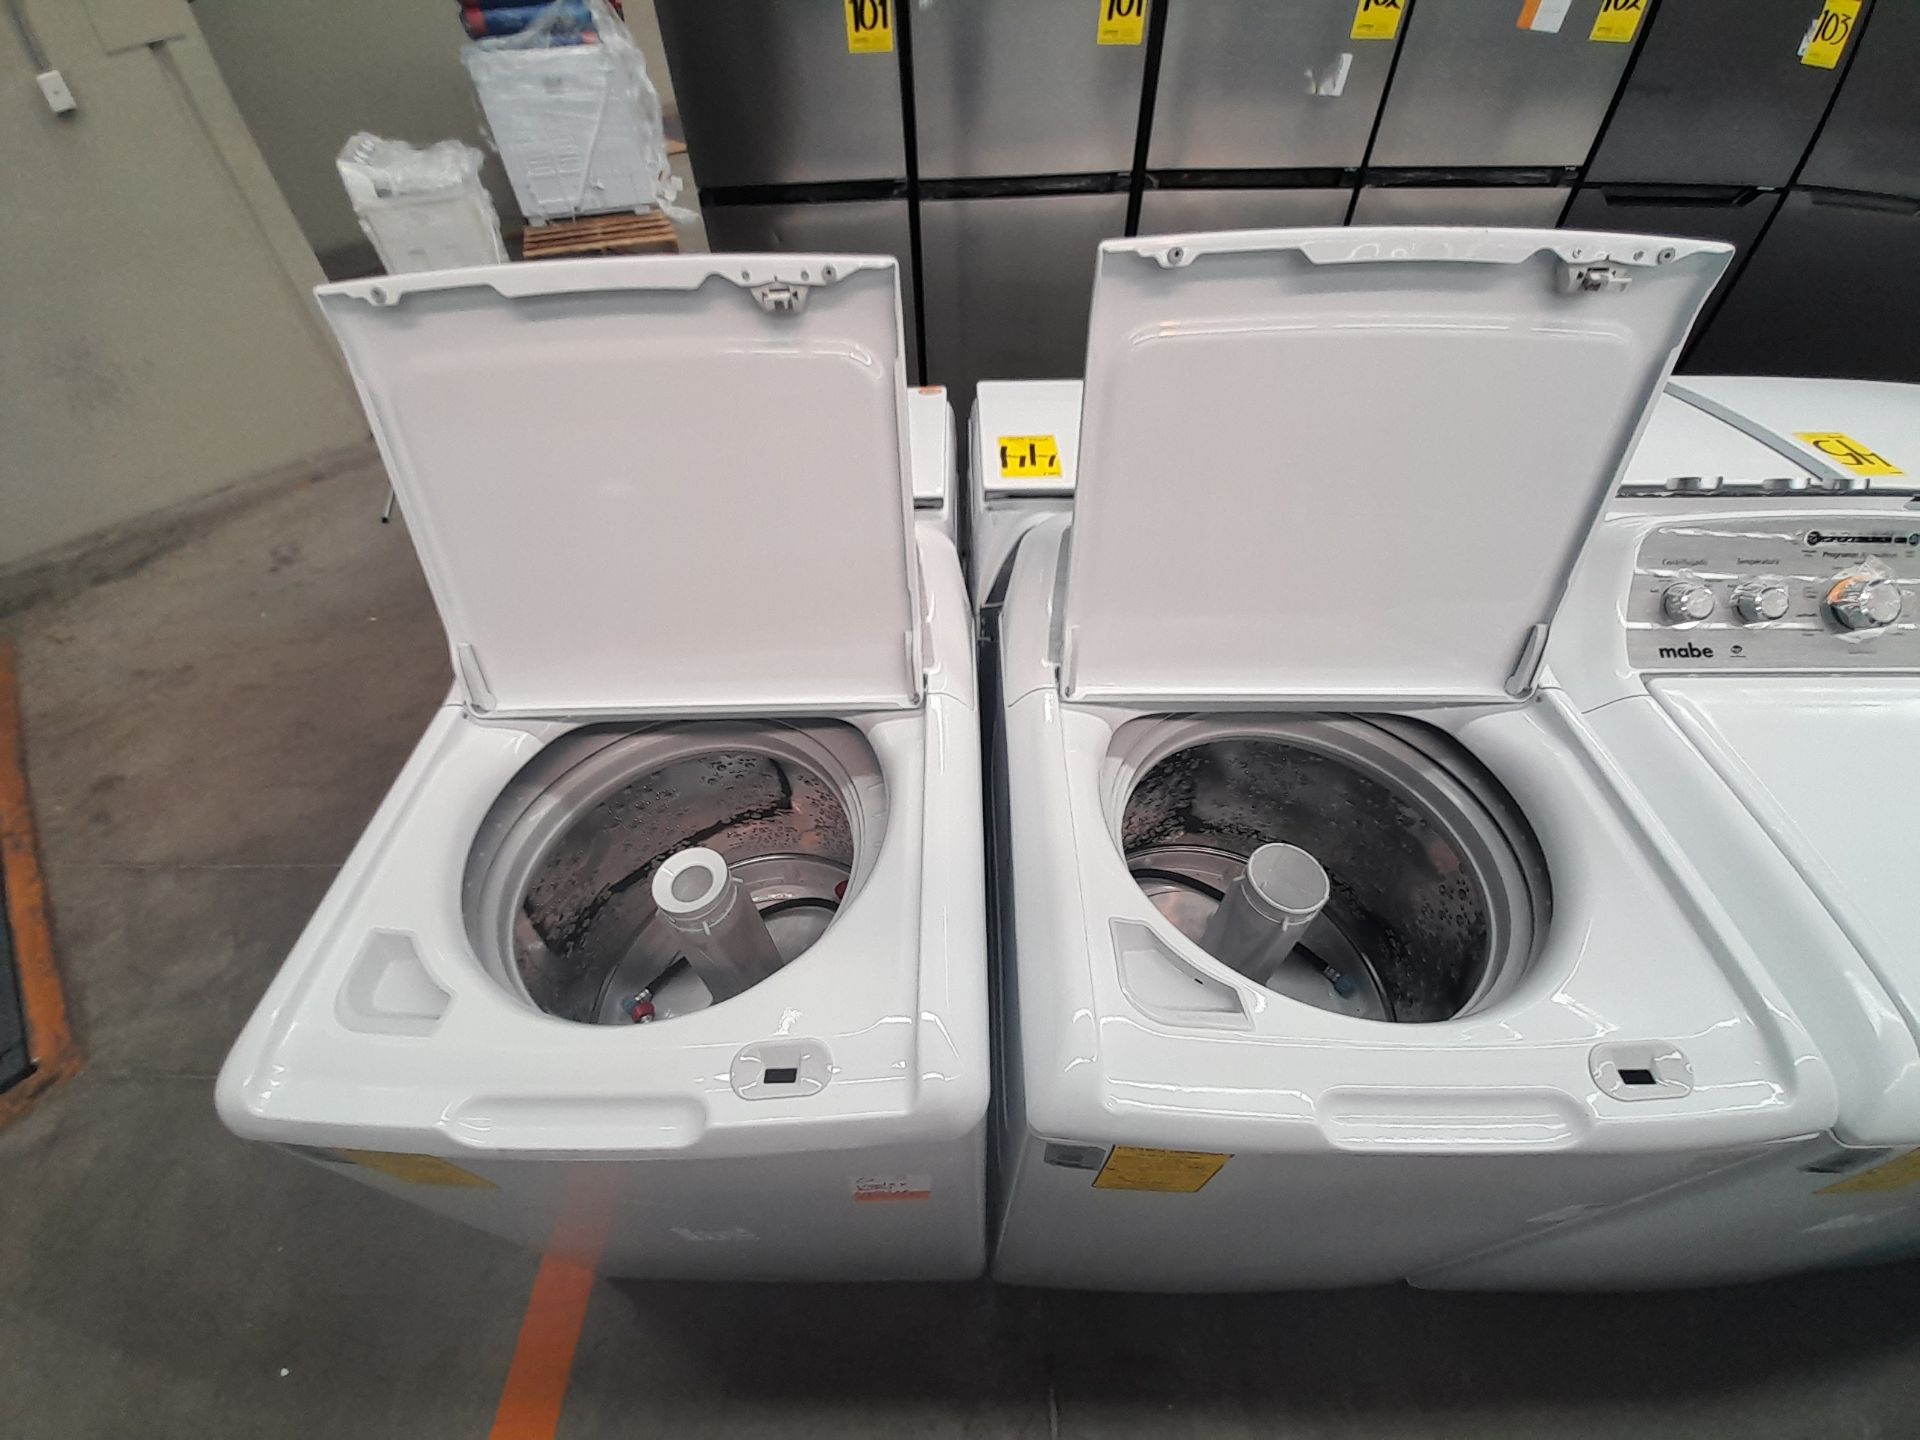 Lote de 2 lavadoras contiene: 1 lavadora de 18 KG, Marca MABE, Modelo LMA78113CBAB01, Serie S76416, - Image 5 of 6